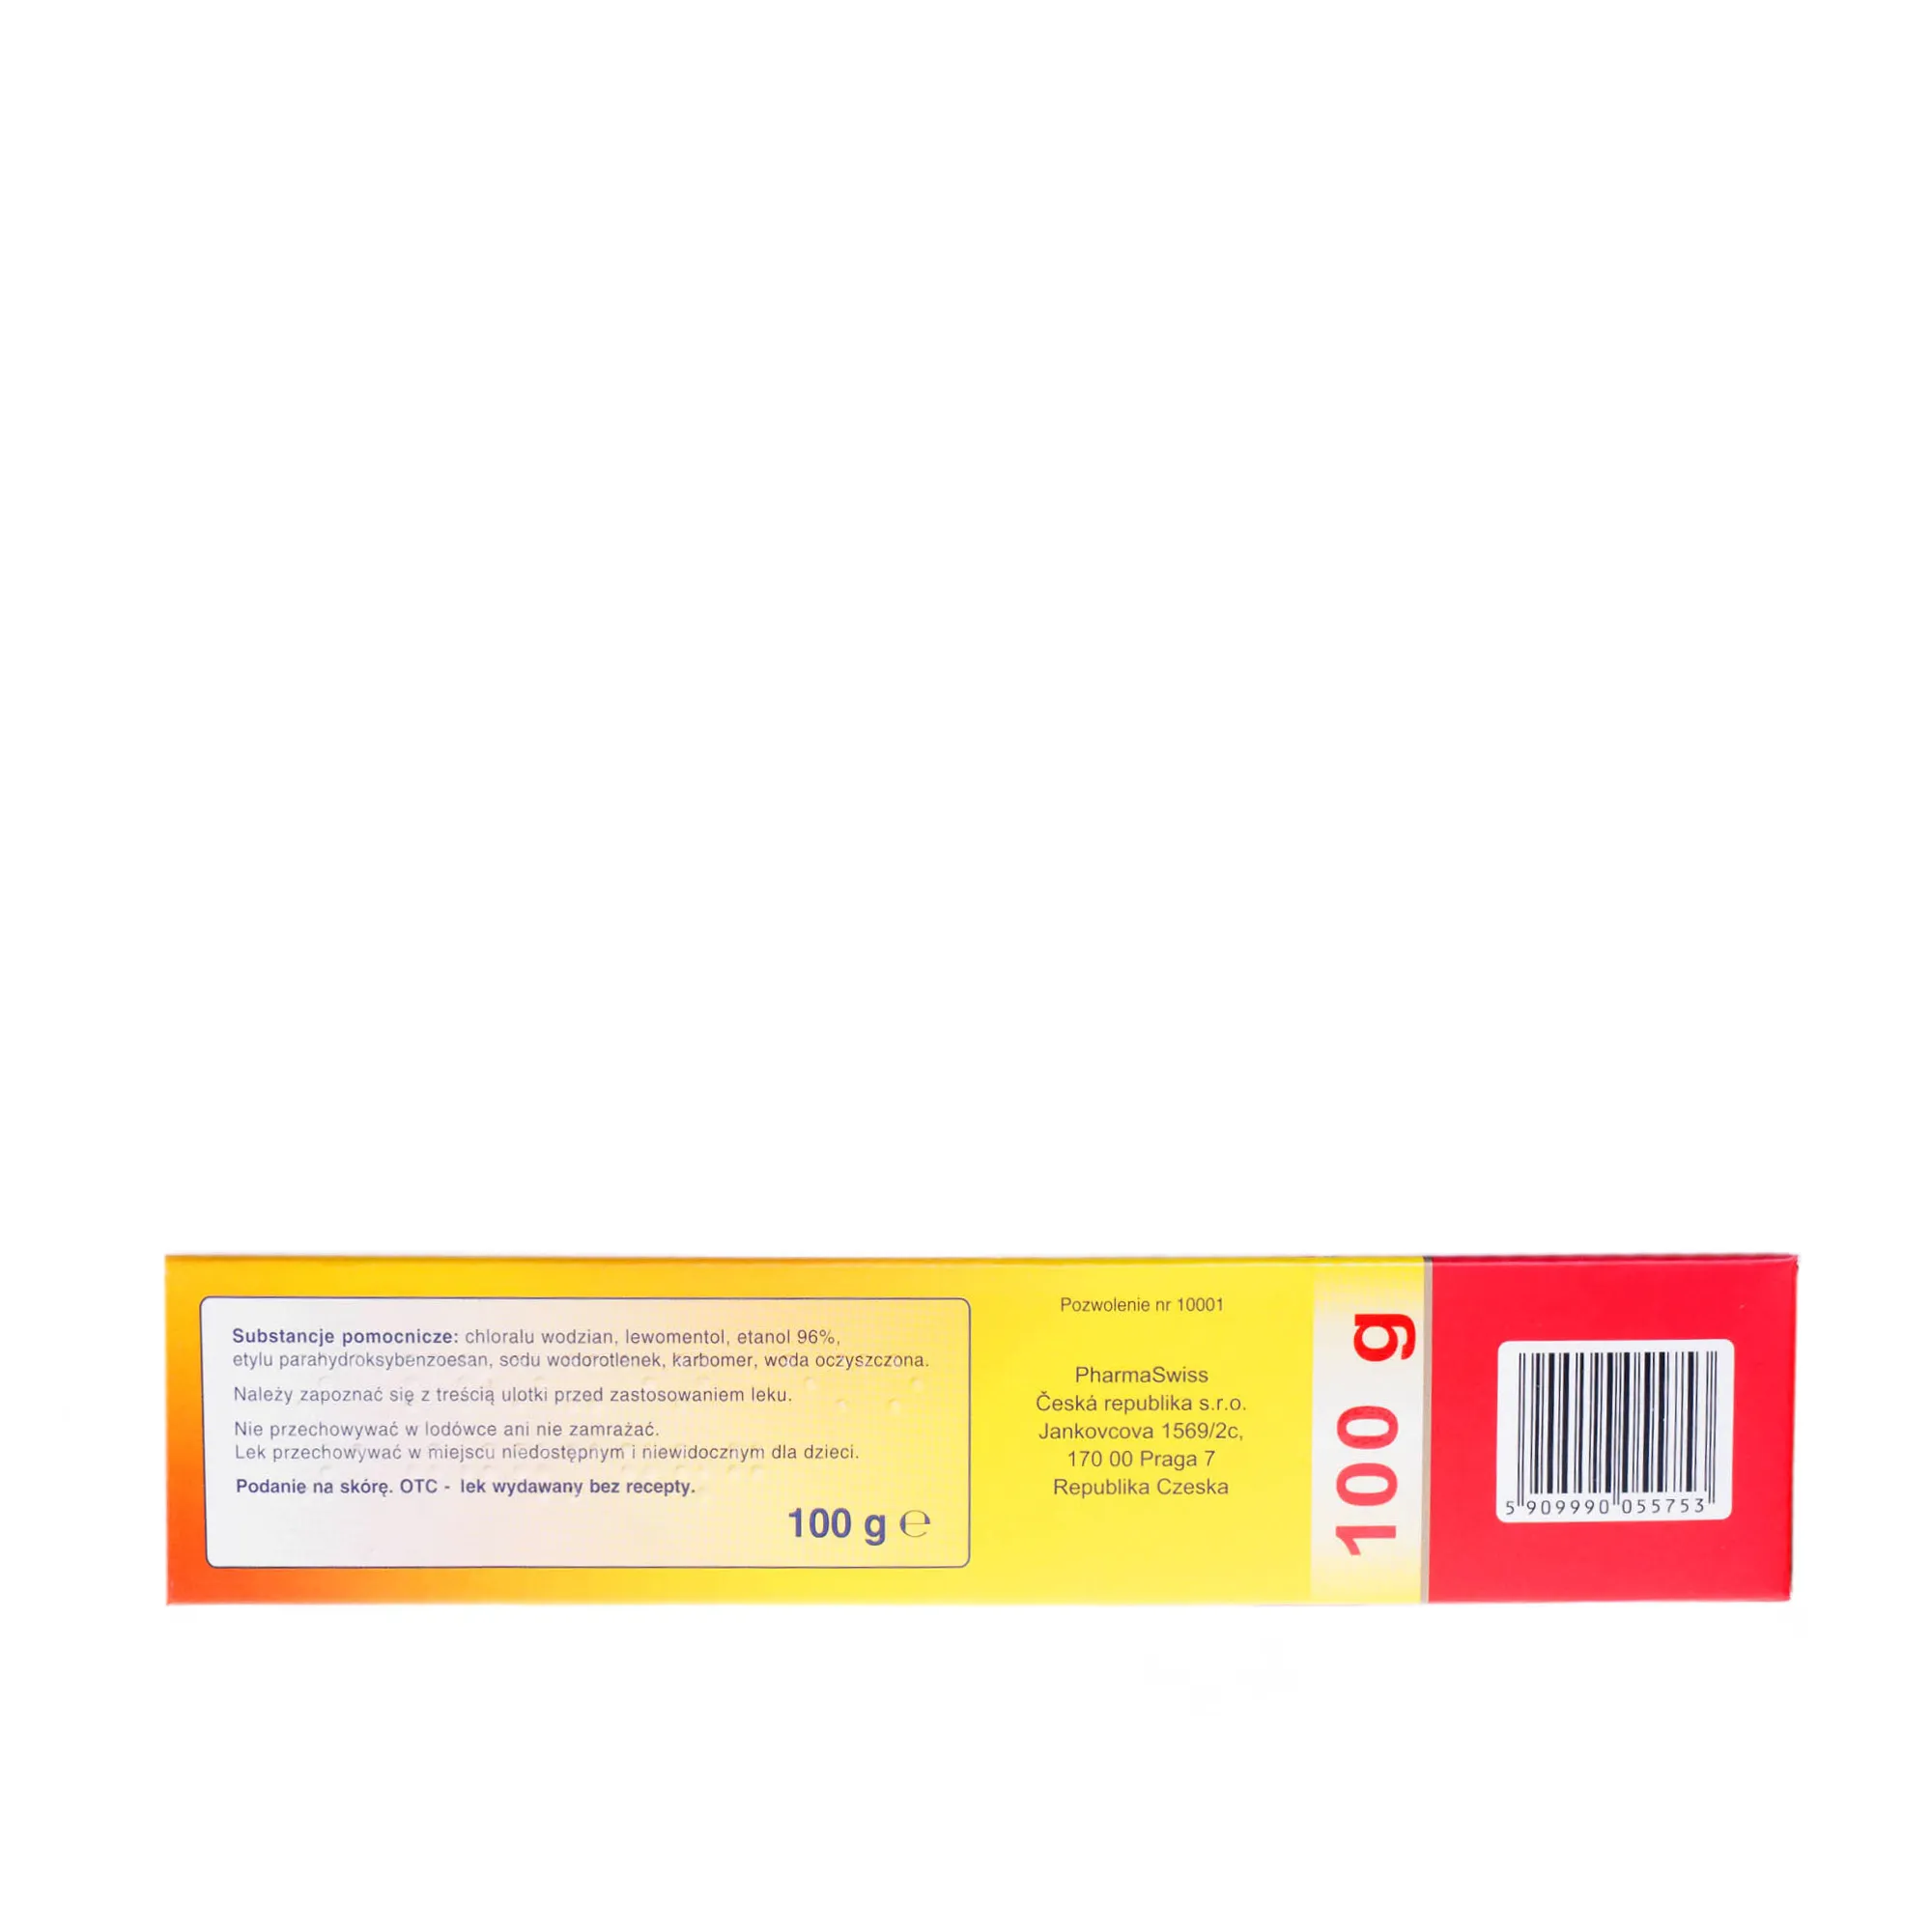 Naproxen Emo 100 mg/g - żel przeciwbólowy i przeciwzapalny, 100 g 